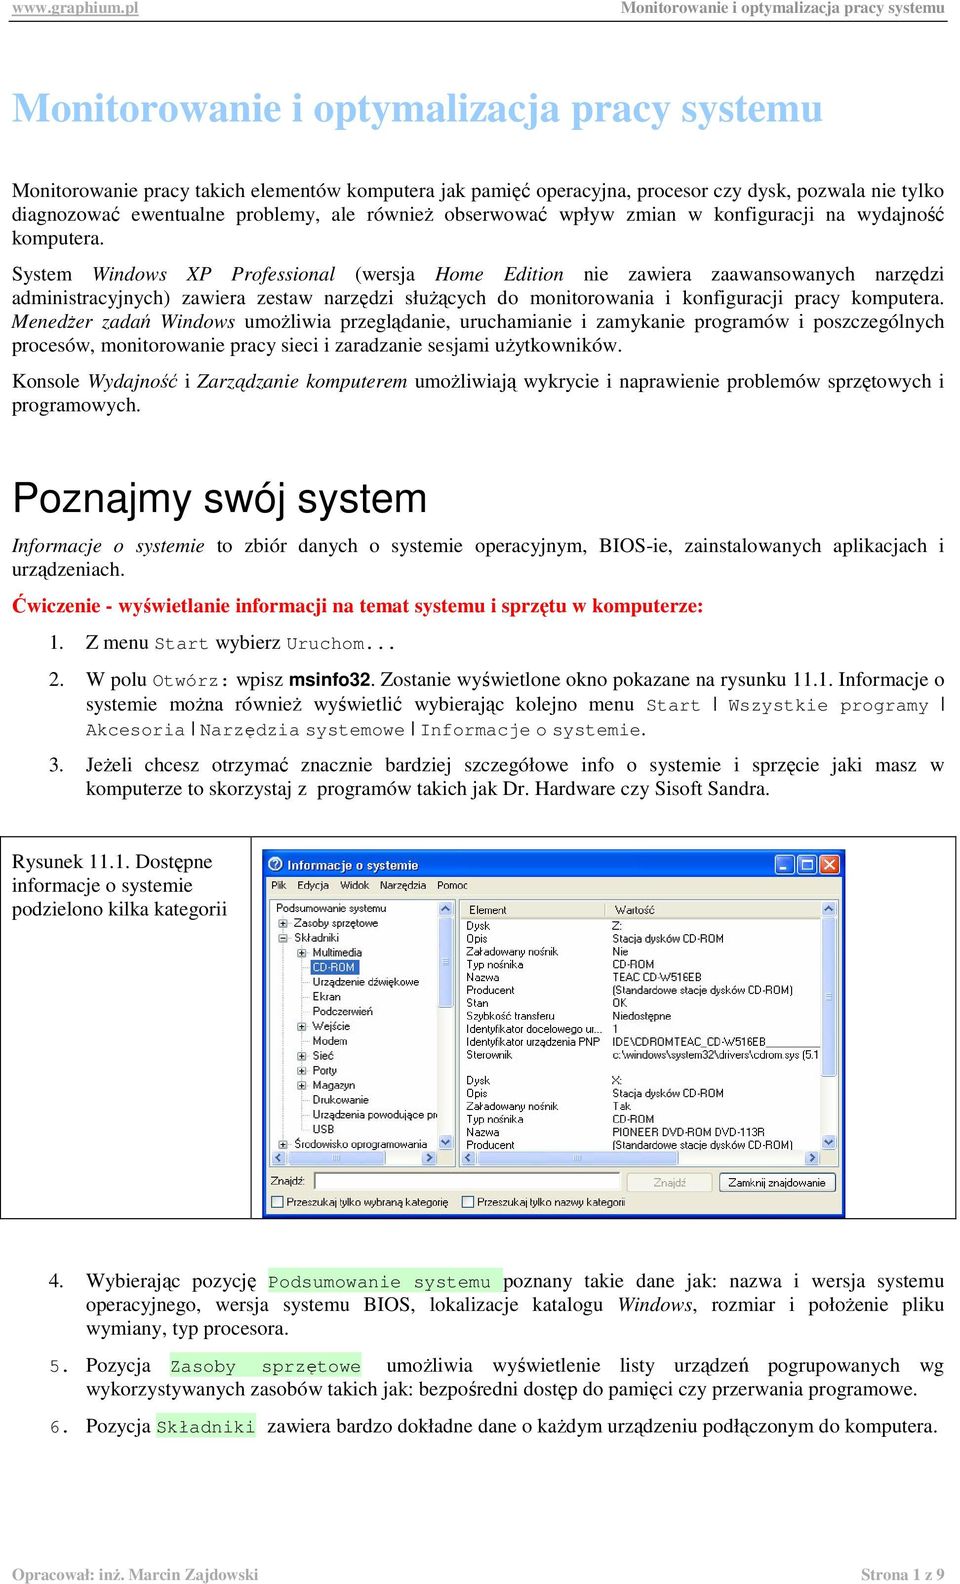 System Windows XP Professional (wersja Home Edition nie zawiera zaawansowanych narzędzi administracyjnych) zawiera zestaw narzędzi słuŝących do monitorowania i konfiguracji pracy komputera.